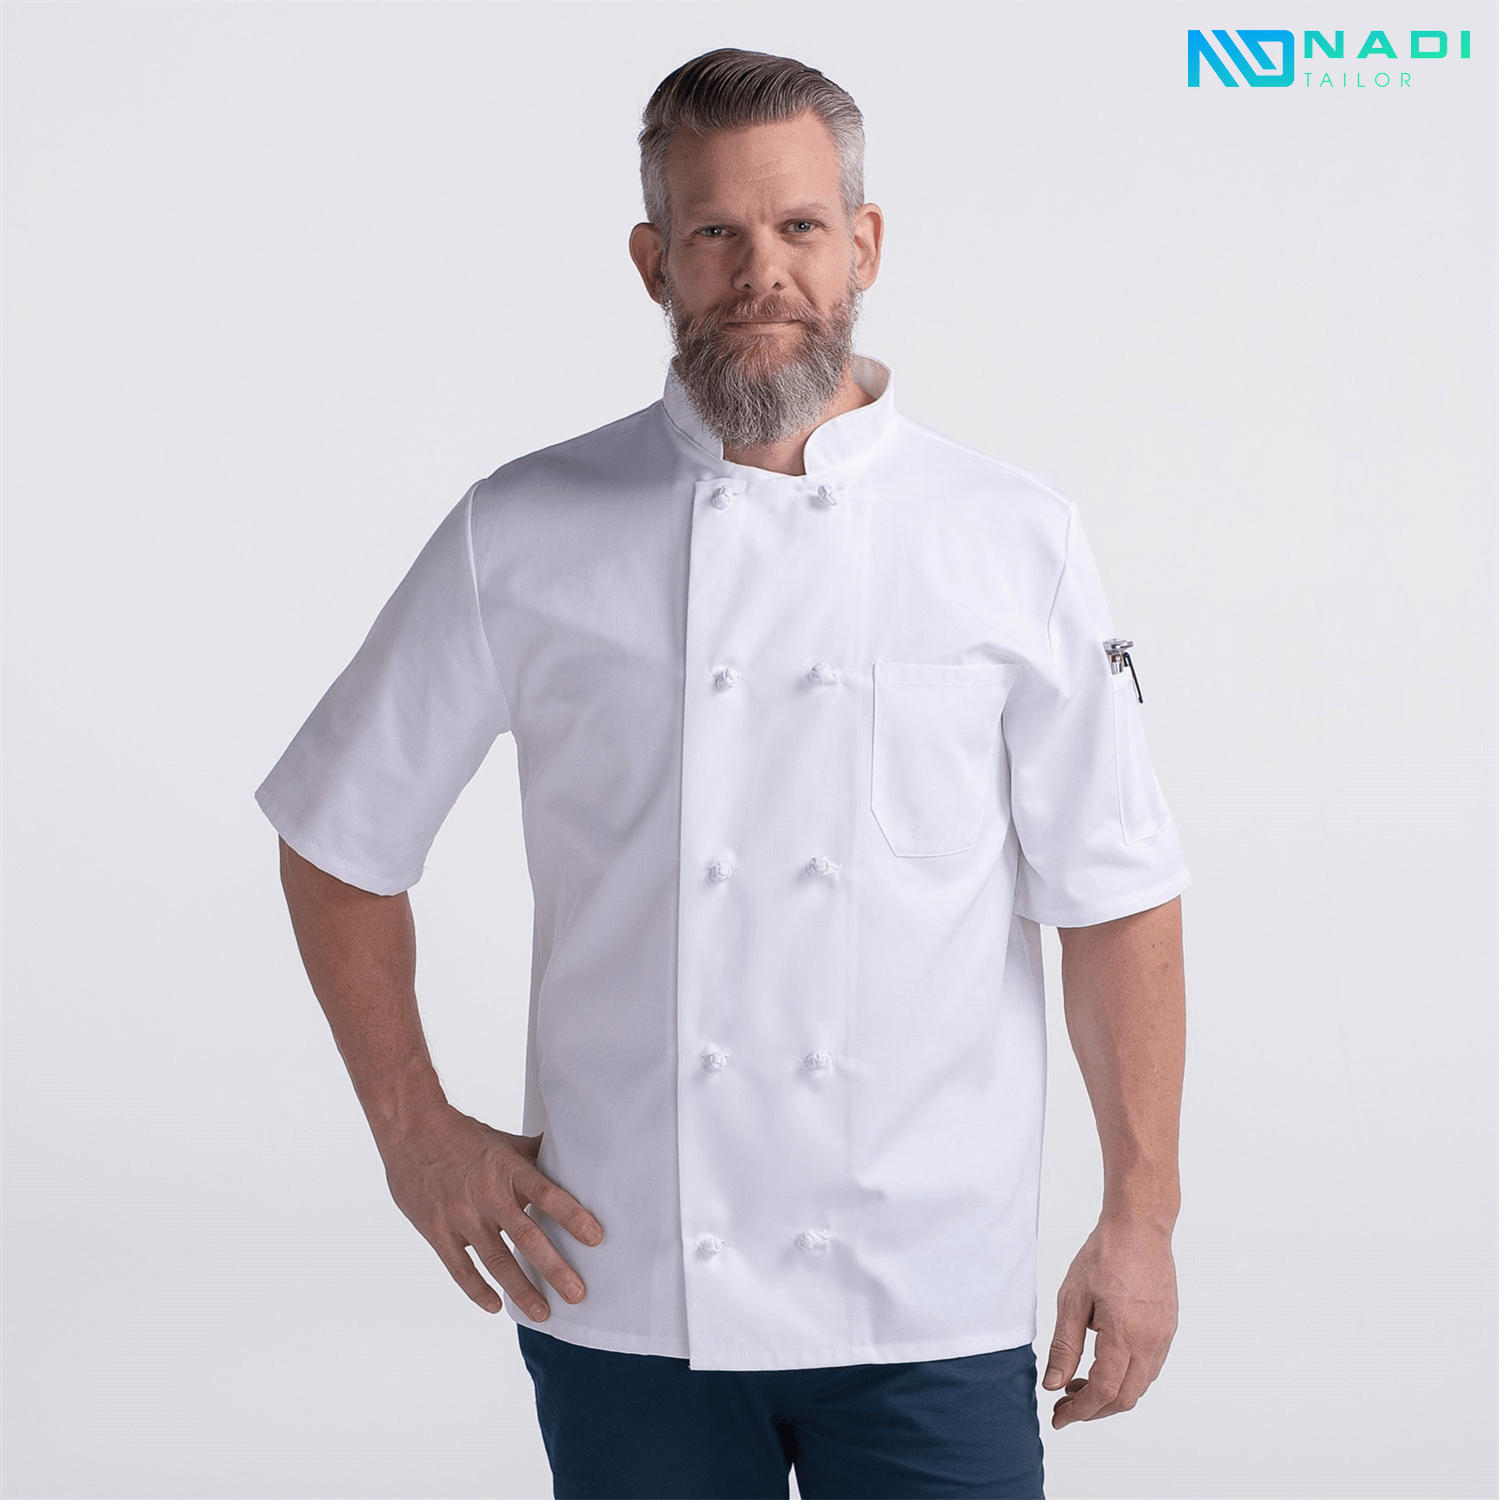 Mẫu áo đồng phục bếp trưởng hiện đại, ngắn tay thể hiện sự linh hoạt